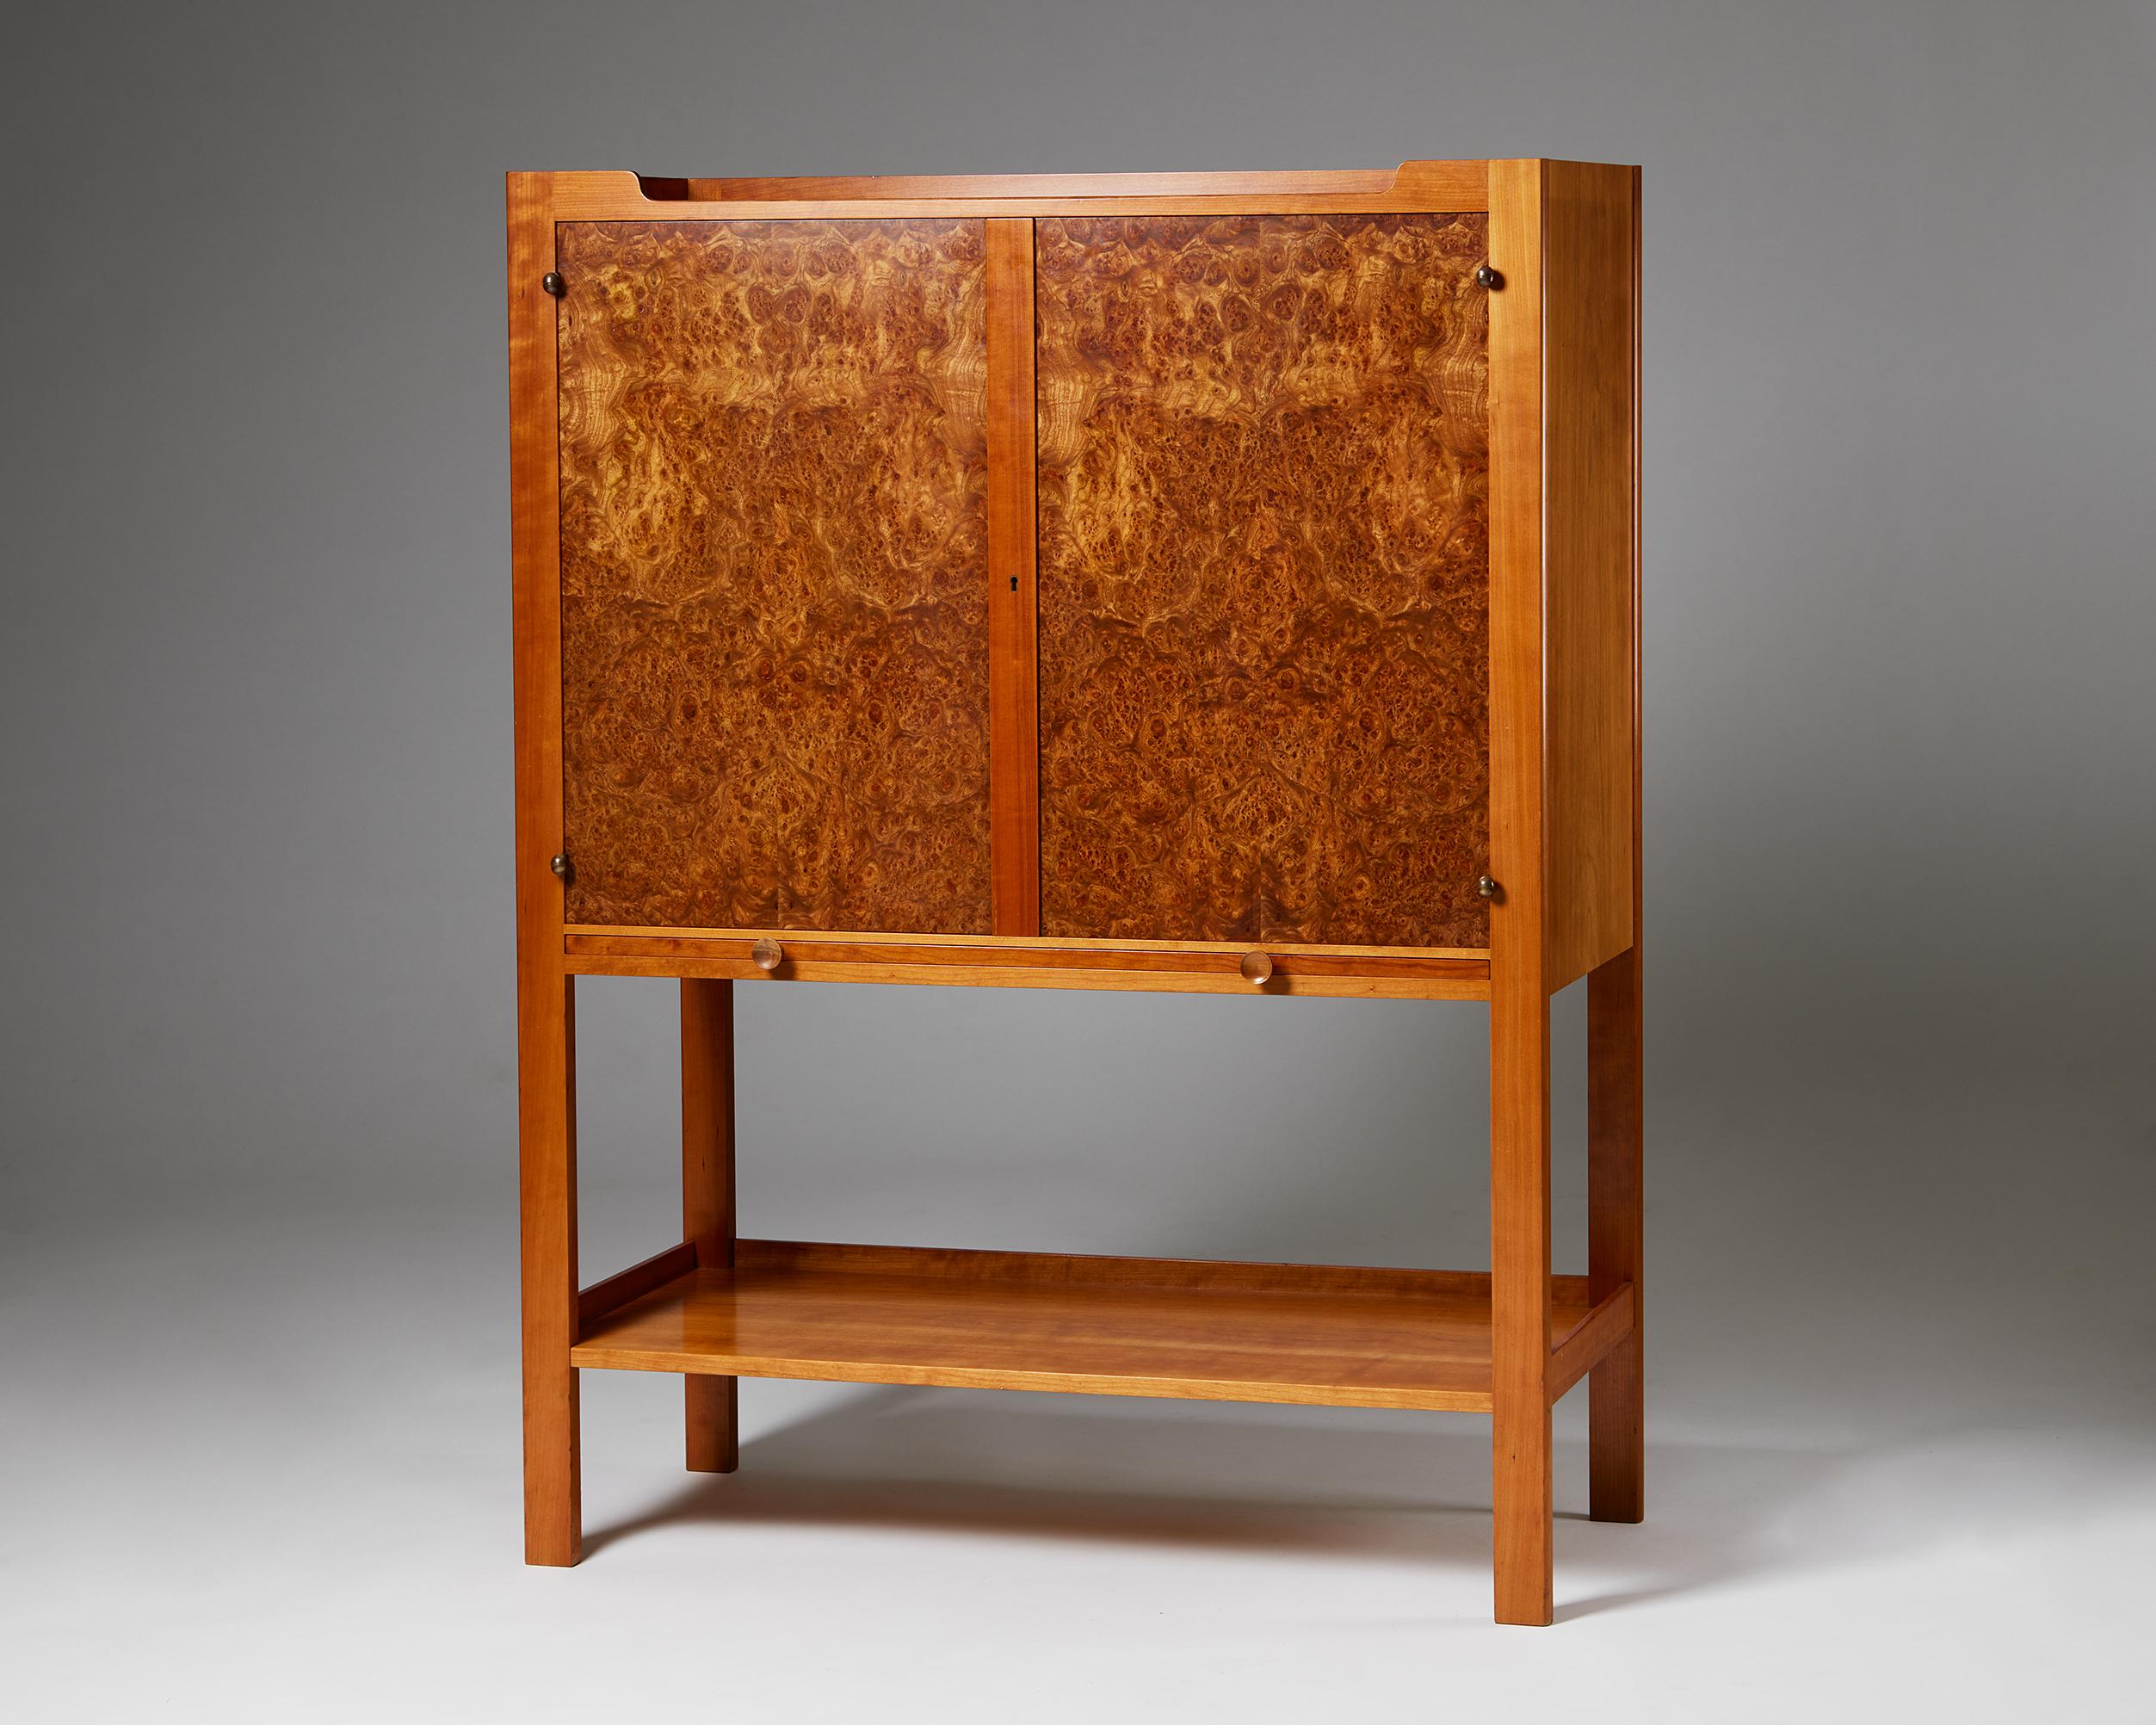 Cabinet on stand model 2135 designed by Josef Frank for Svenskt Tenn,
Sweden, 1950s.
Cherry wood and alder root veneer.

Signed.

Dimensions: 
H: 140 cm / 4' 7